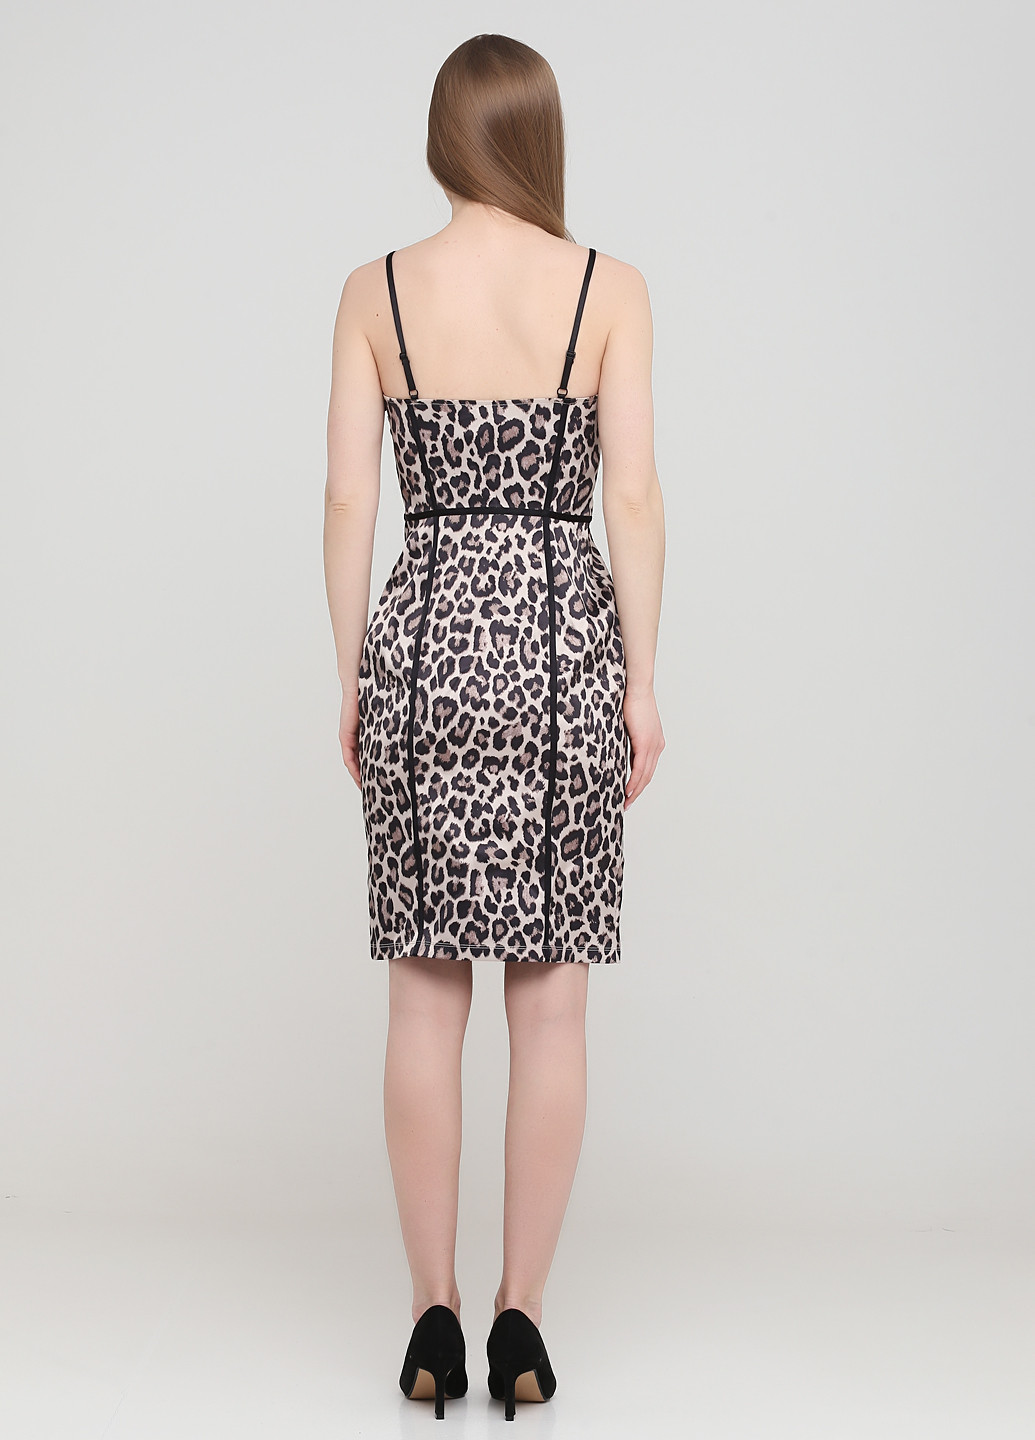 Бежевое коктейльное платье футляр H&M леопардовый